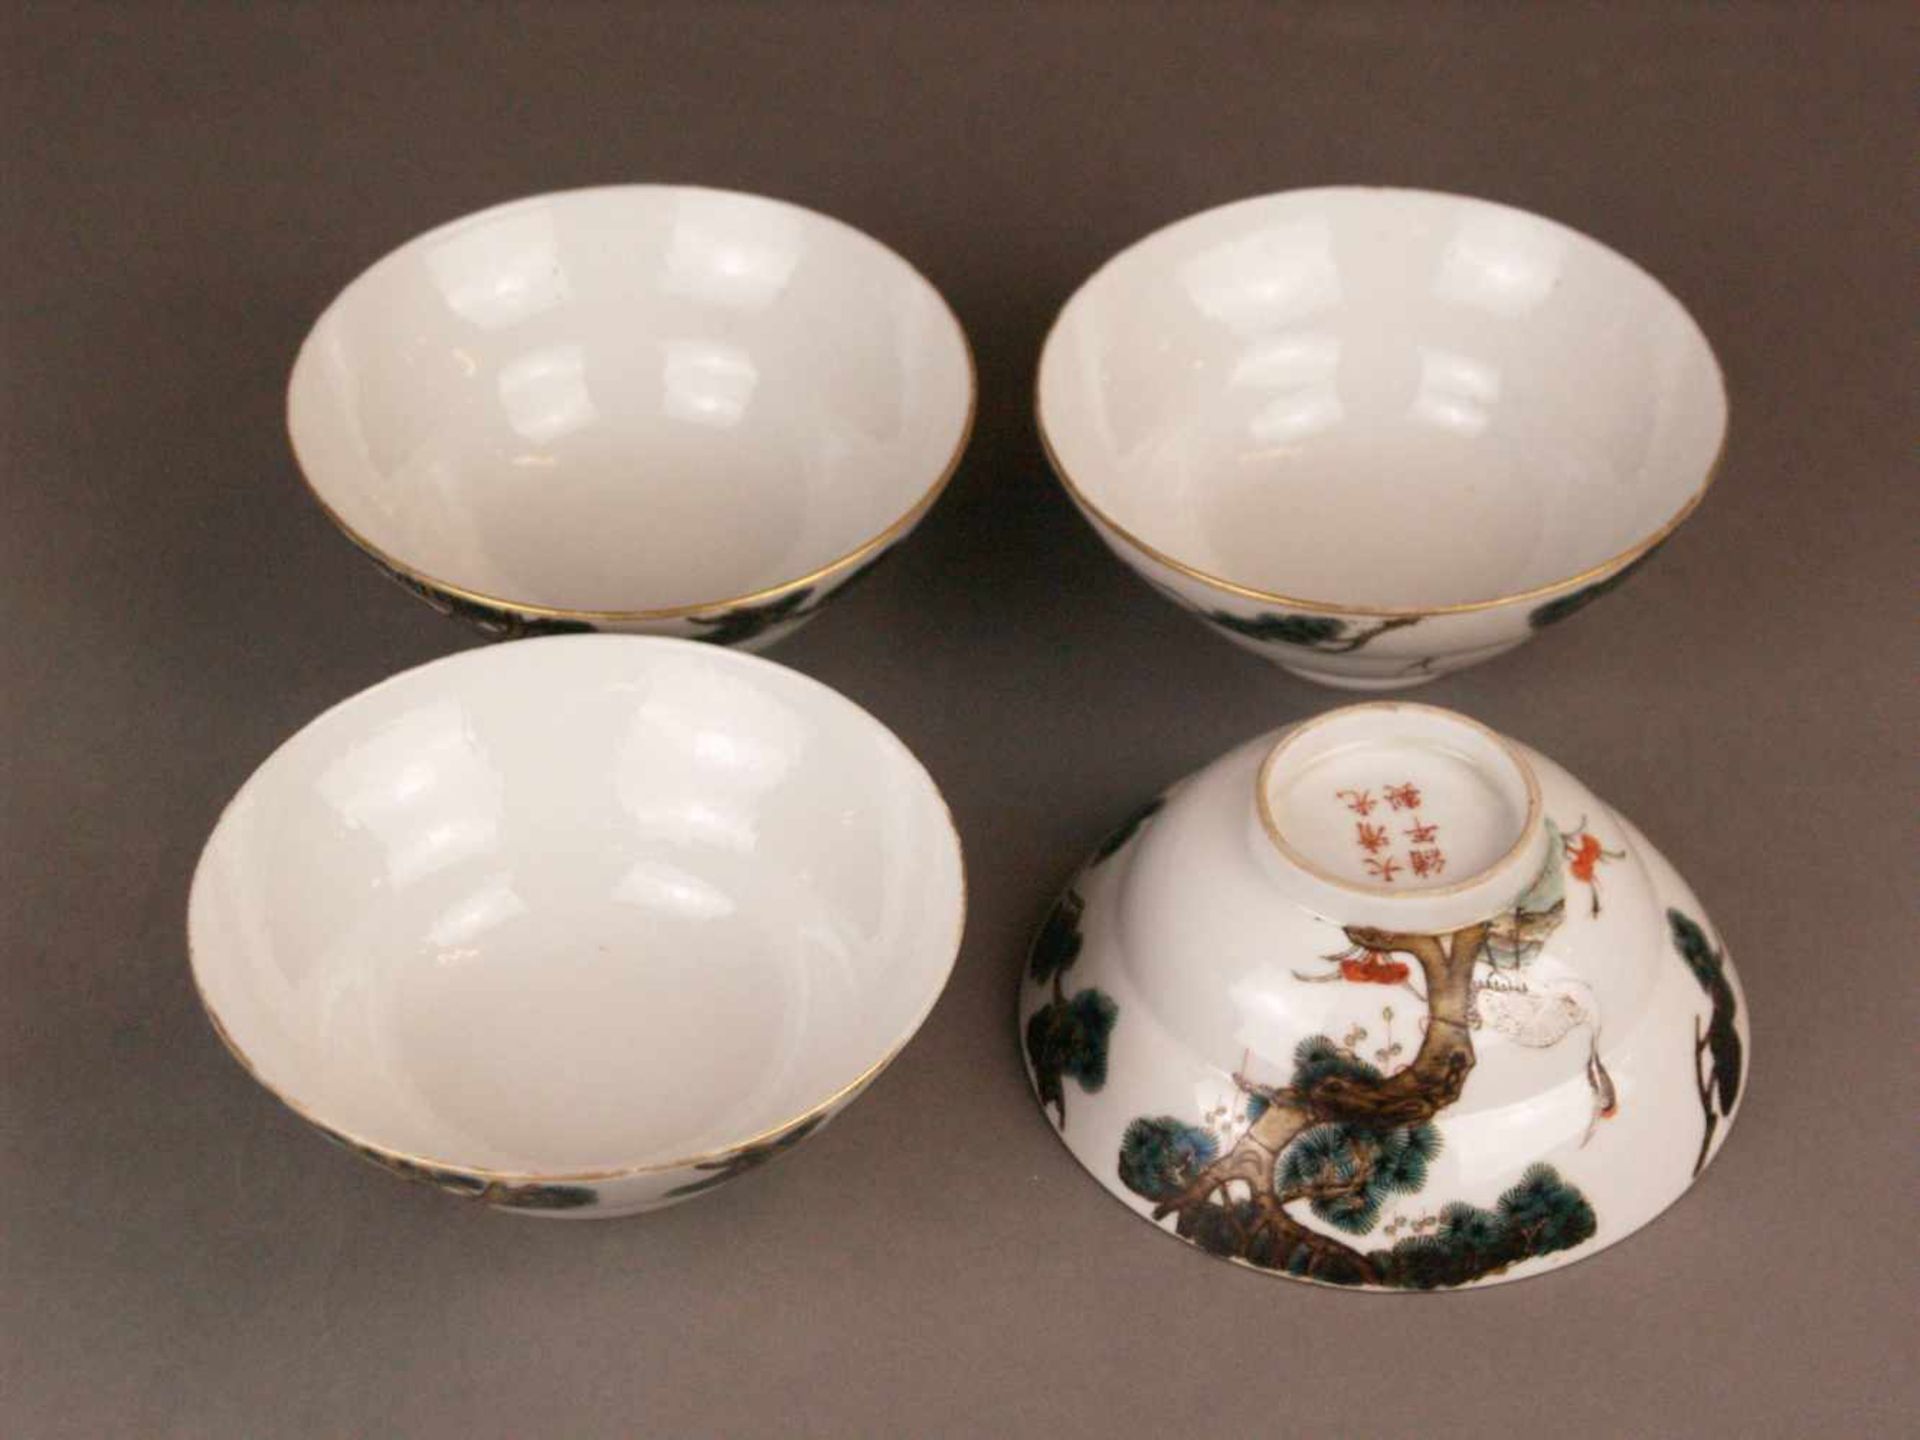 Vier Schalen - China, Porzellan mit polychromen Aufglasufarben, über Standring ansteigende hohe